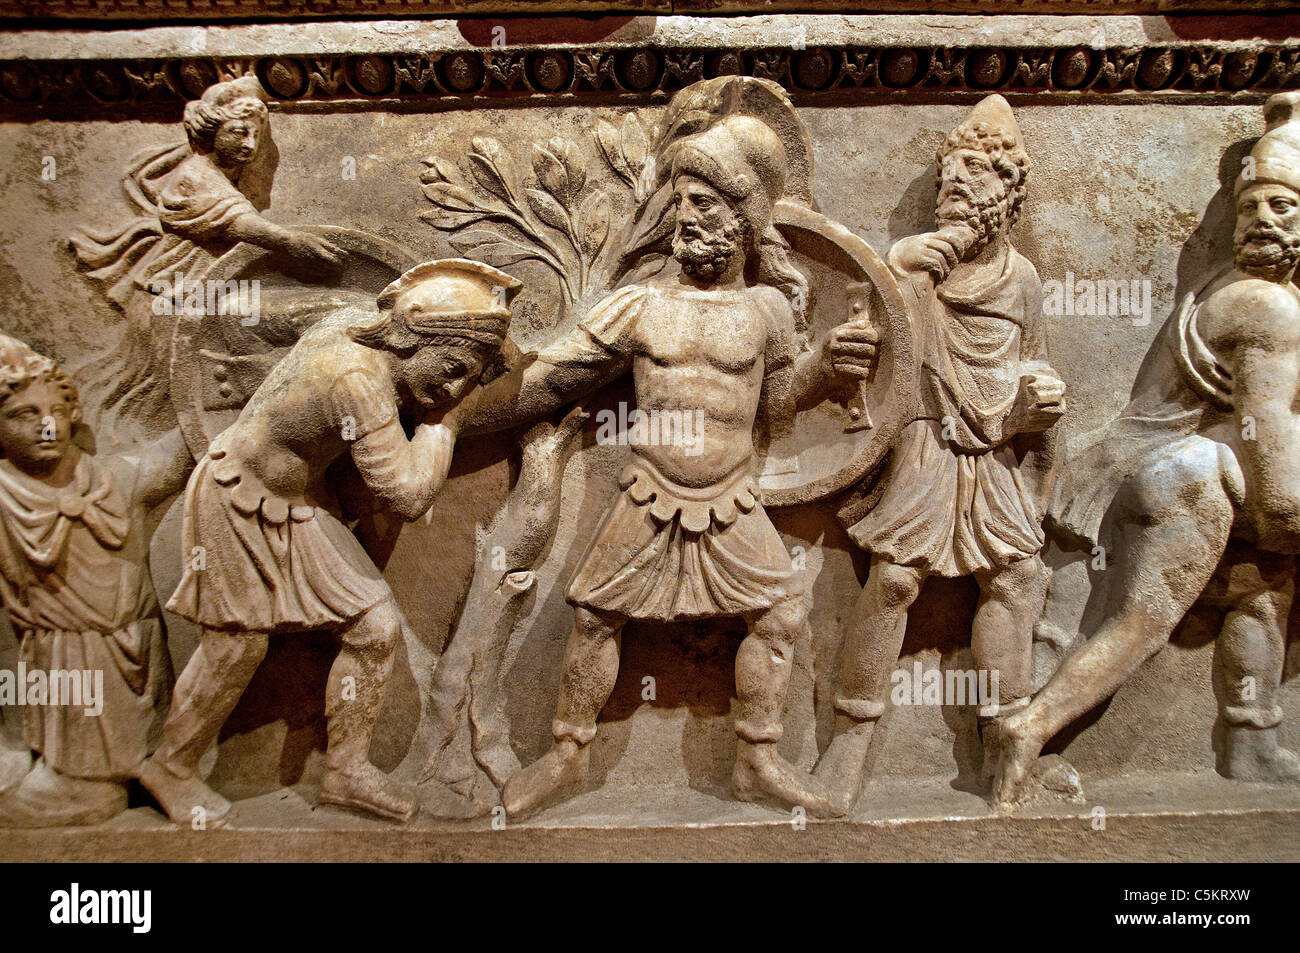 Römischer Sarkophag Aurelia Botania Demetria 2. II. Jahrhundert n. Chr. Aphrodite Paris, der von Menelaos besiegt wird, stellt Trojanische Kriegsszenen Odysseus dar Stockfoto